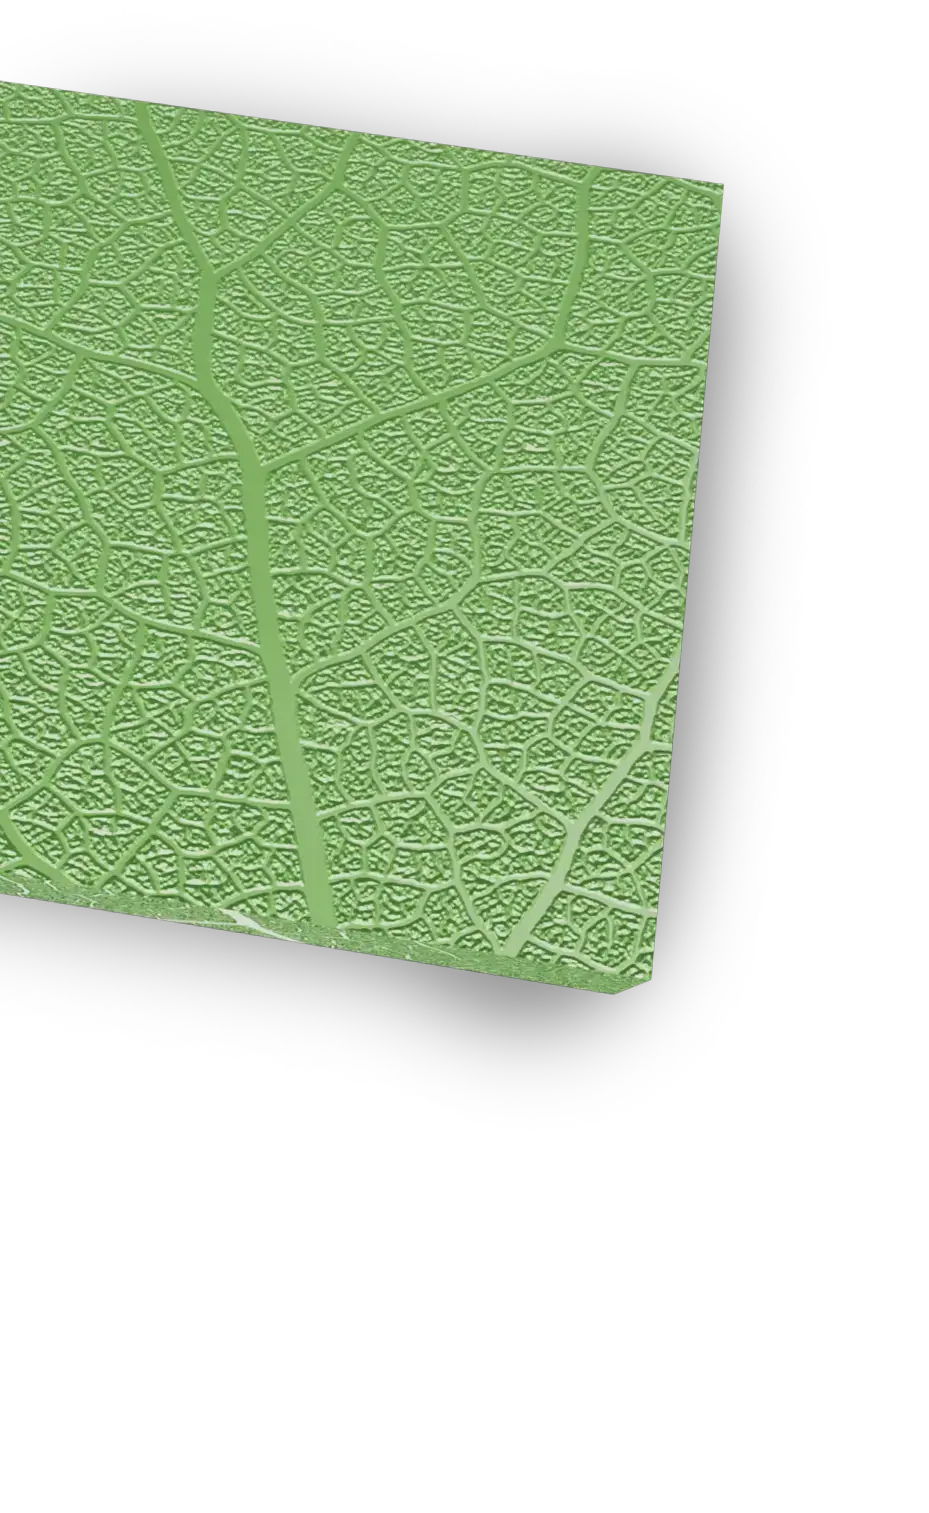 Esempio di superficie incisa con il laser in una texture che ricorda elementi vegetali